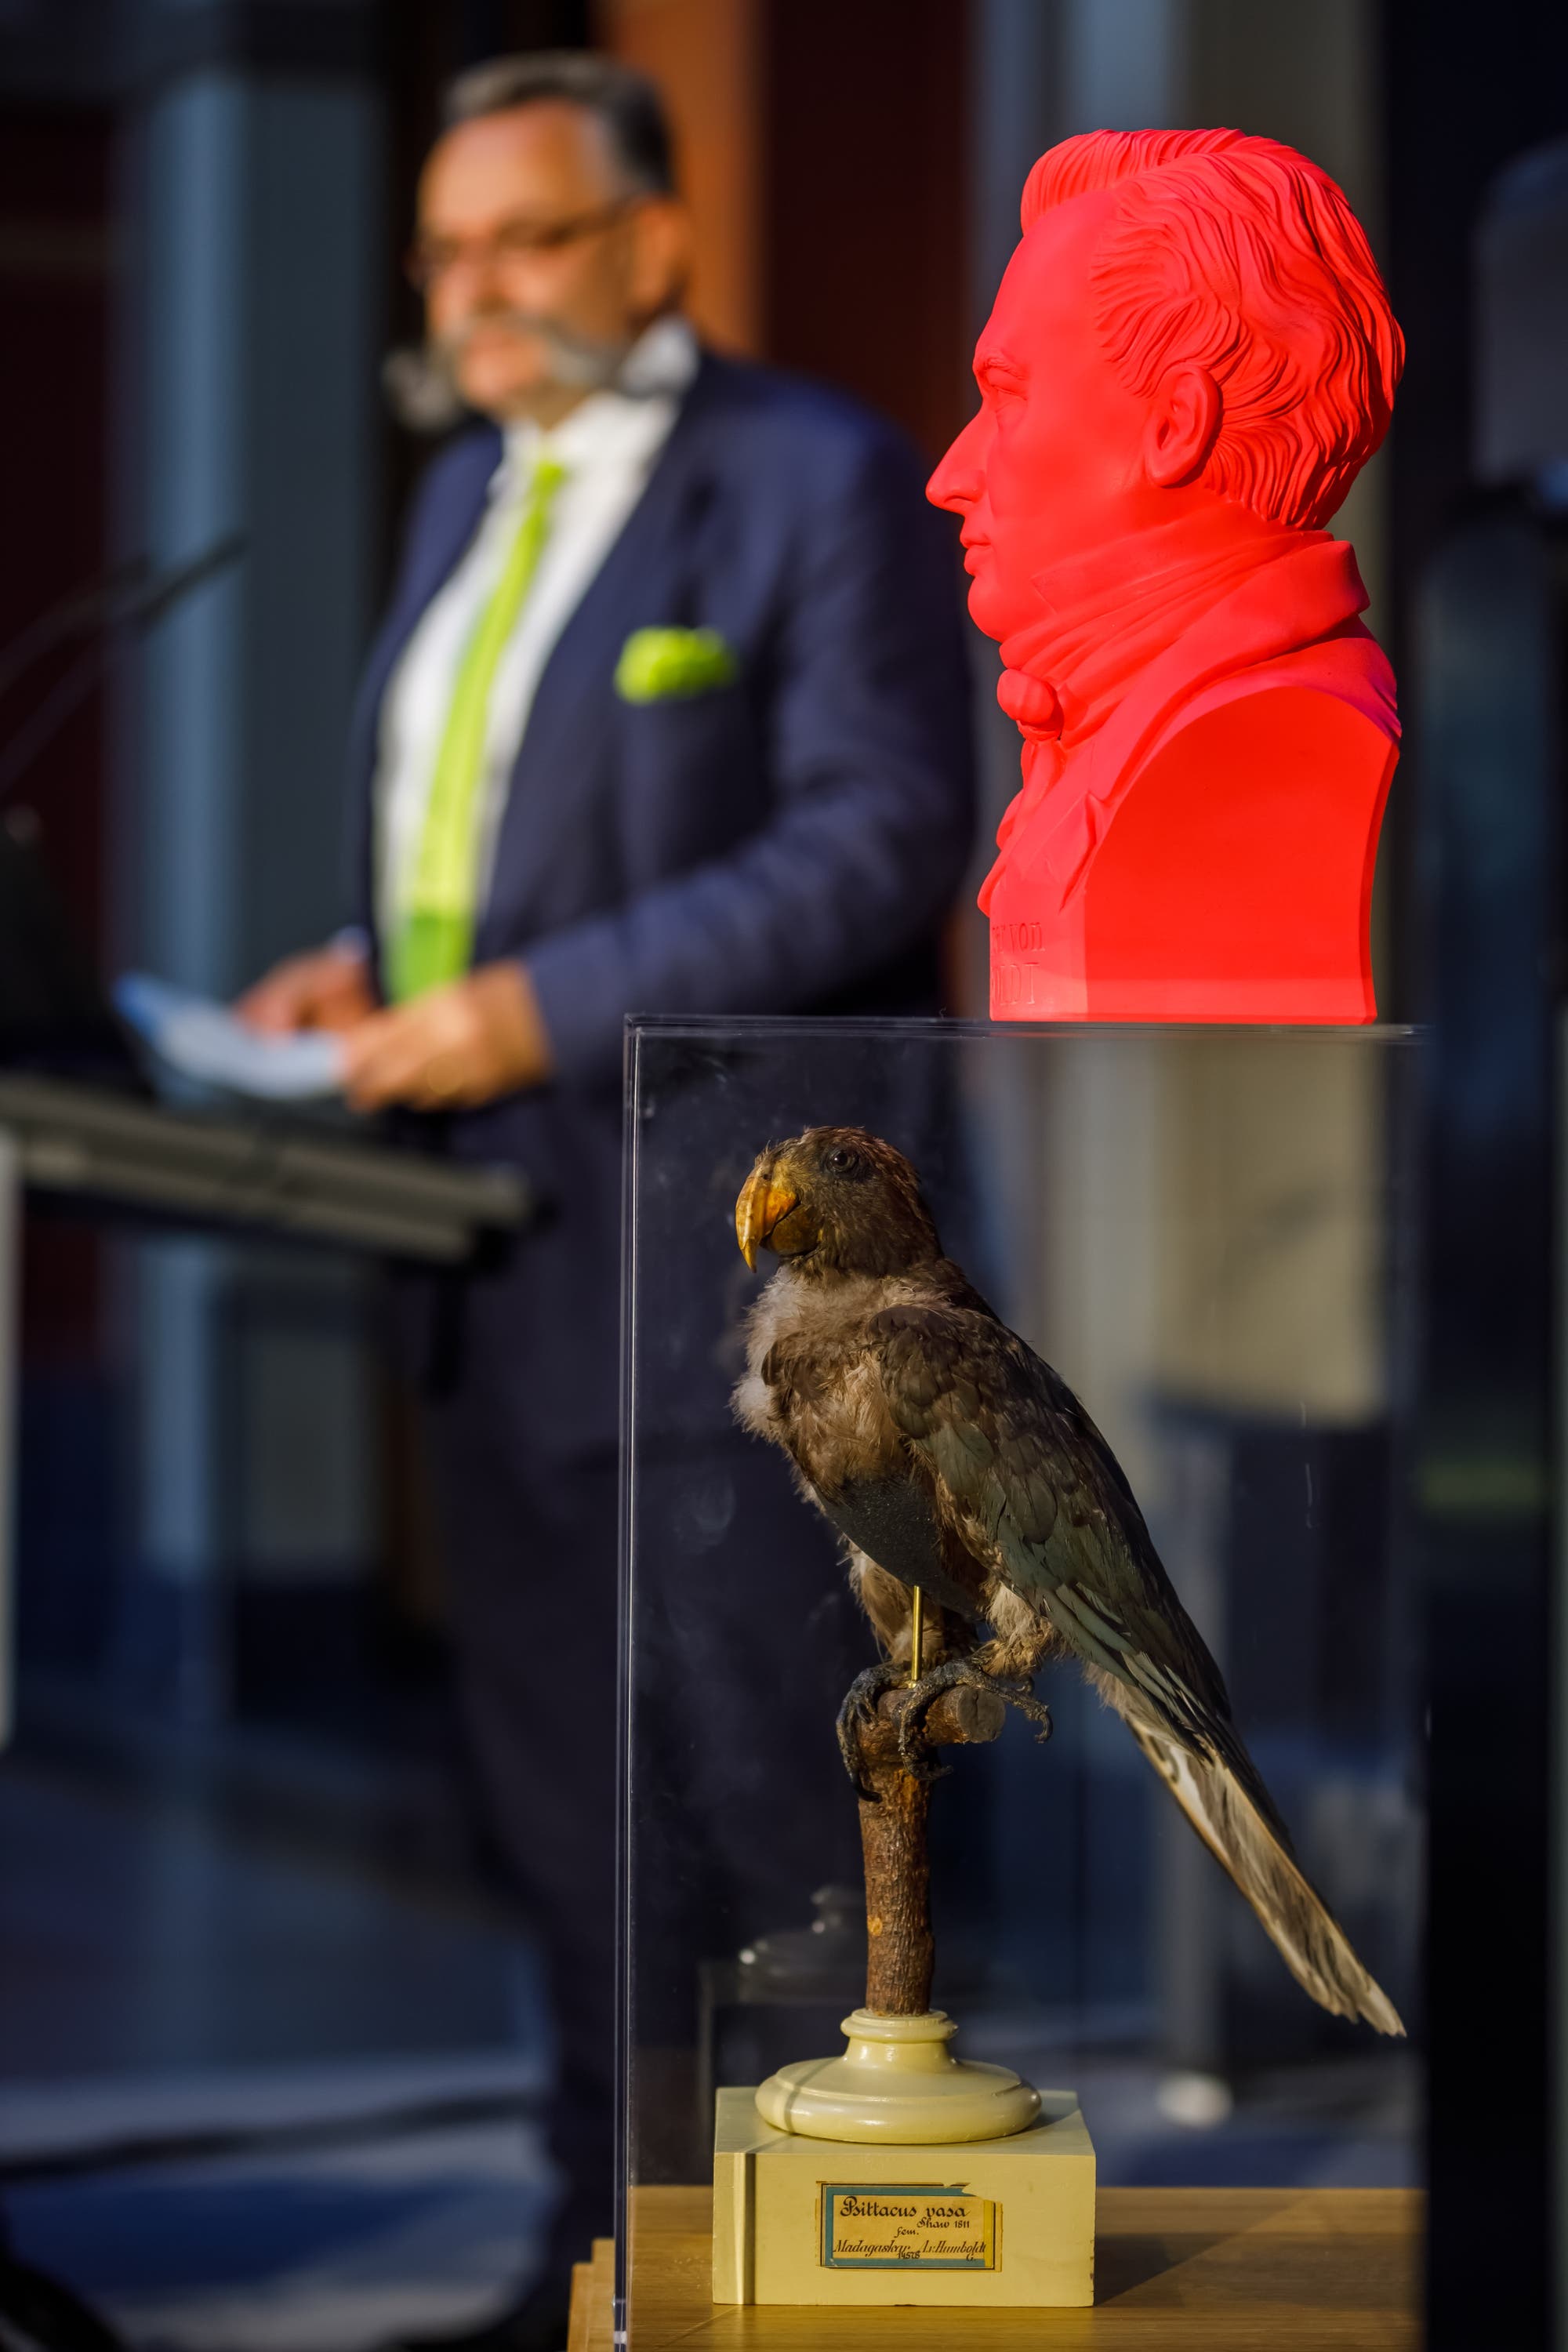 Humboldts Papagei nimmt an wichtigen Anlässen teil